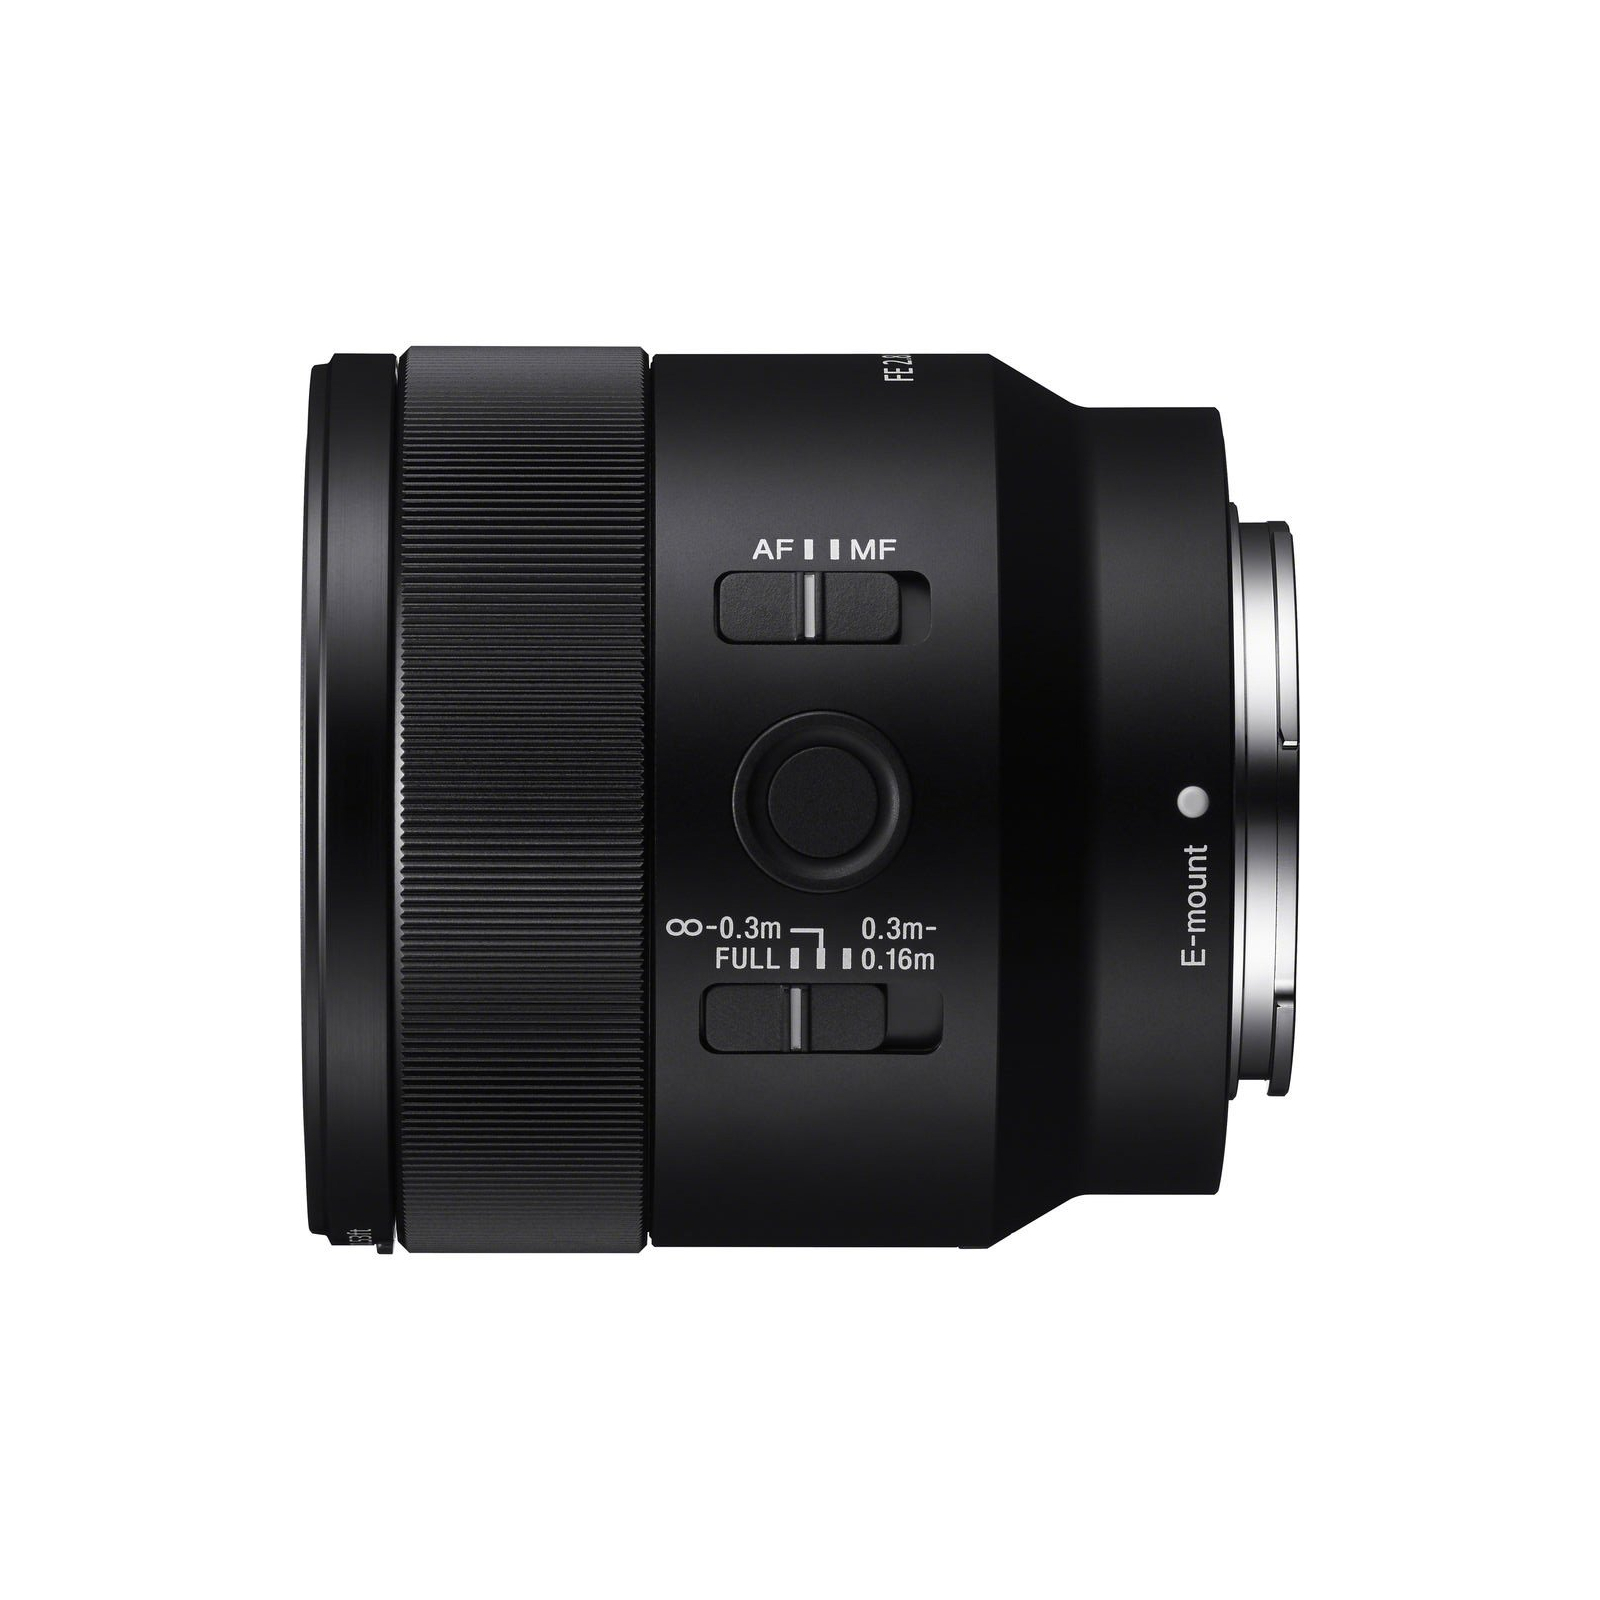 Об'єктив Sony 50mm, f/2.8 Macro для камер NEX FF (SEL50M28.SYX) зображення 3